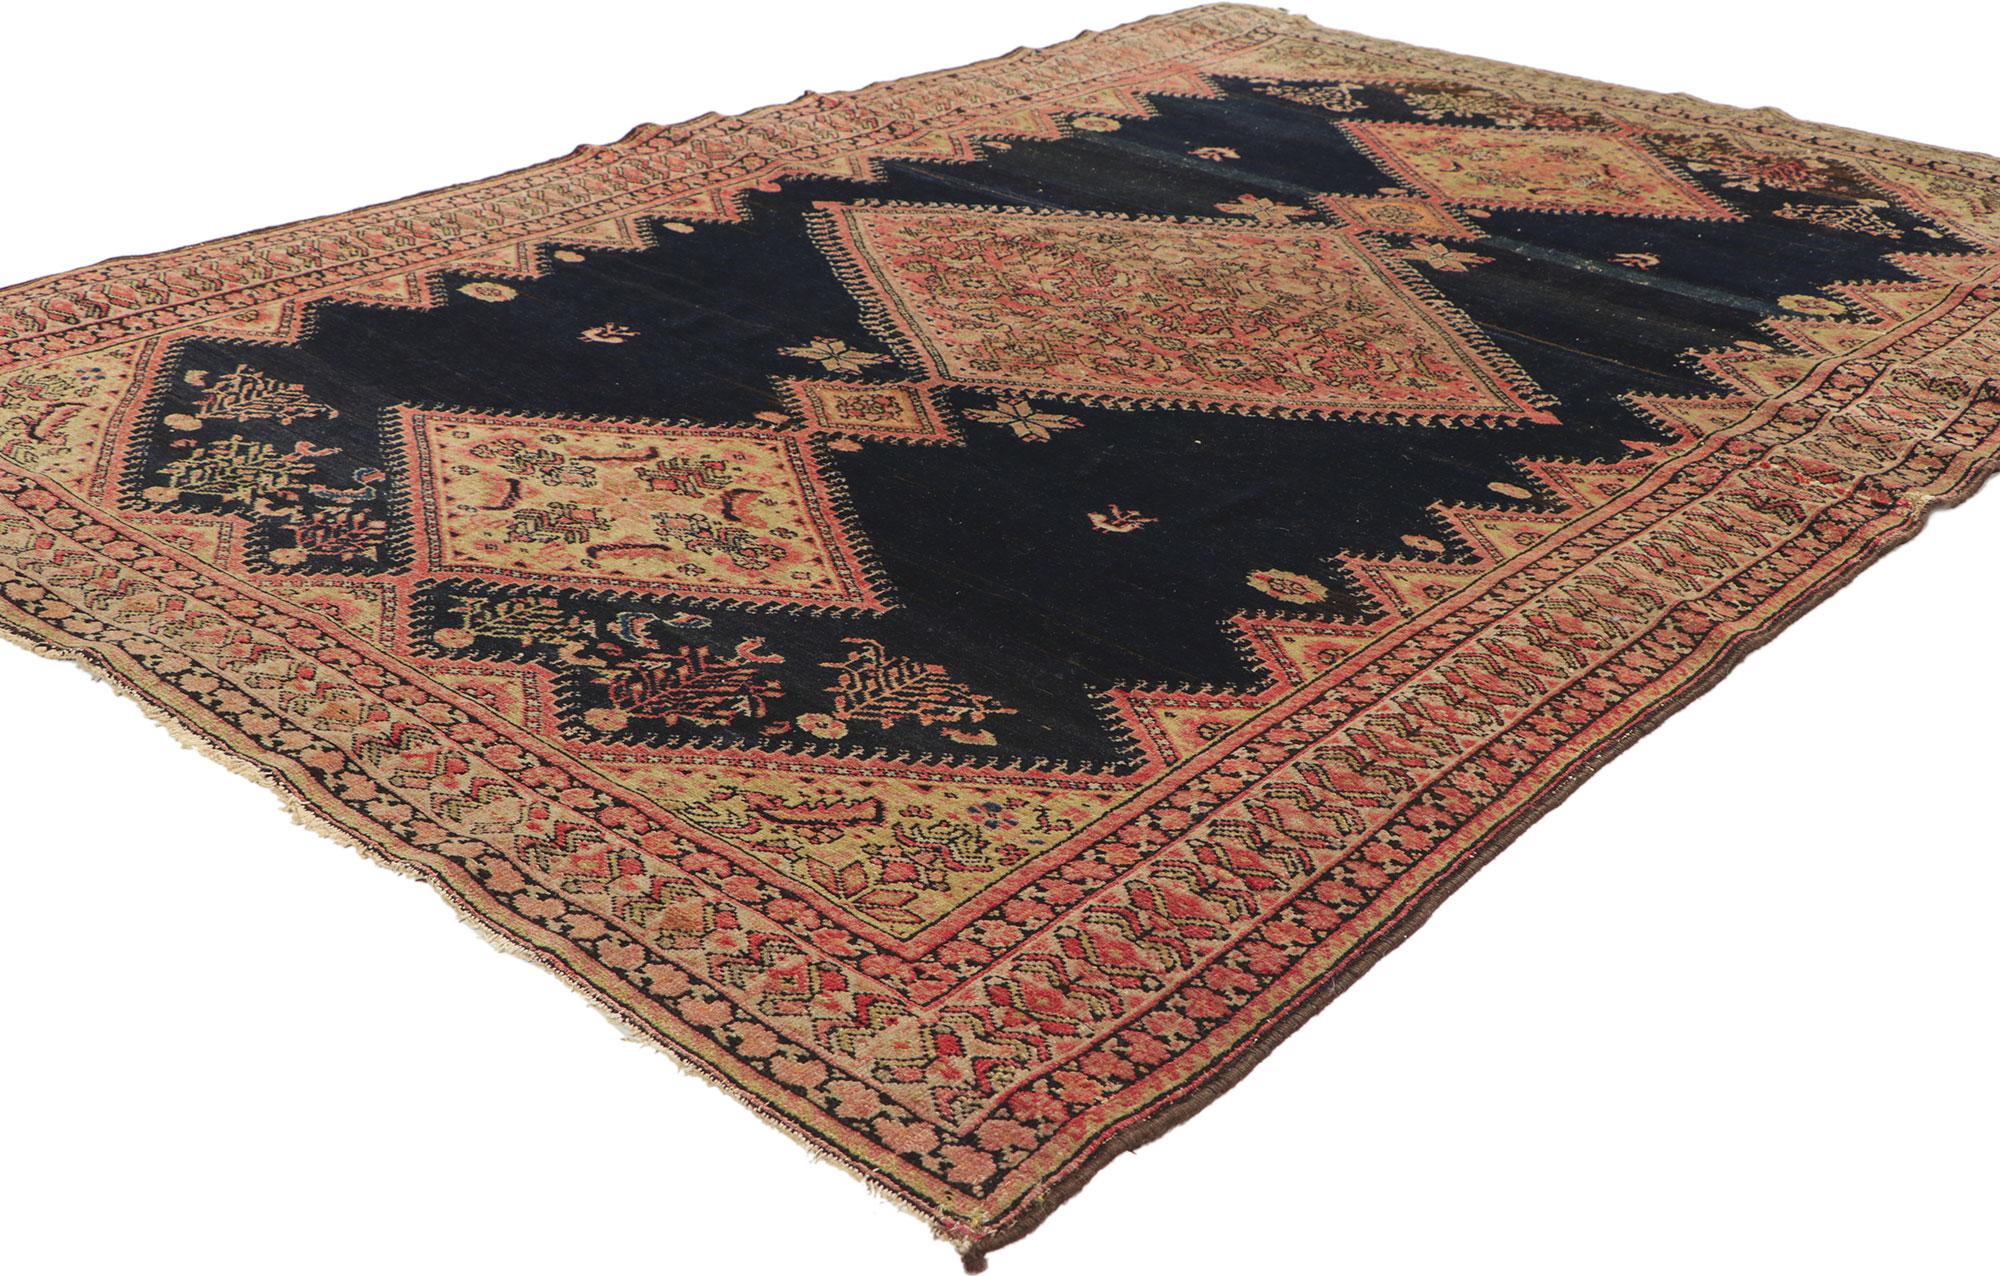 78518 Antiker persischer Malayer-Teppich, 04'01 x 06'03. Dieser handgeknüpfte antike persische Malayer-Teppich aus Wolle besticht durch seinen zeitlosen Stil und seine unglaubliche Detailtreue und Textur und ist eine fesselnde Vision gewebter